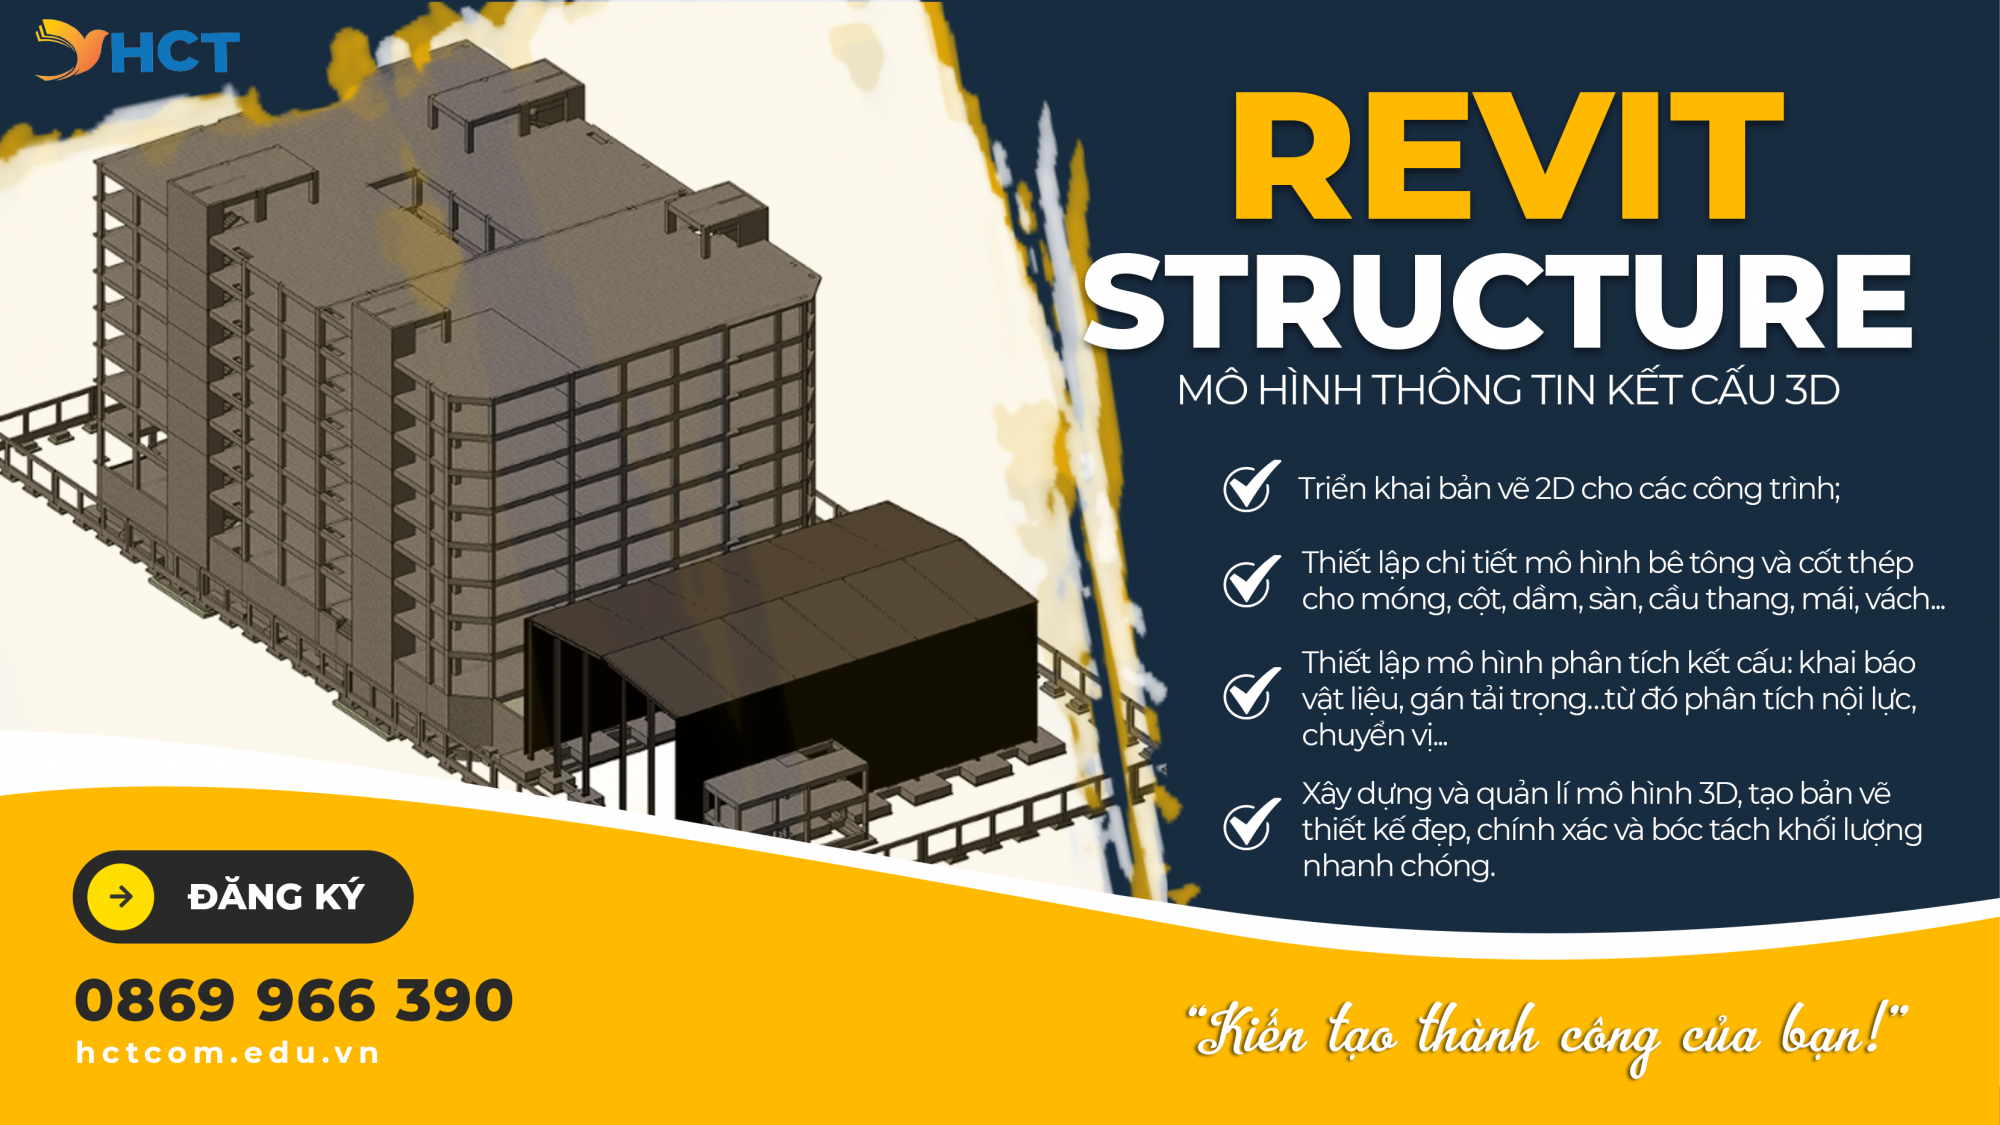 RVB - REVIT STRUCTURE Mô Hình Thông Tin Kết Cấu 3D